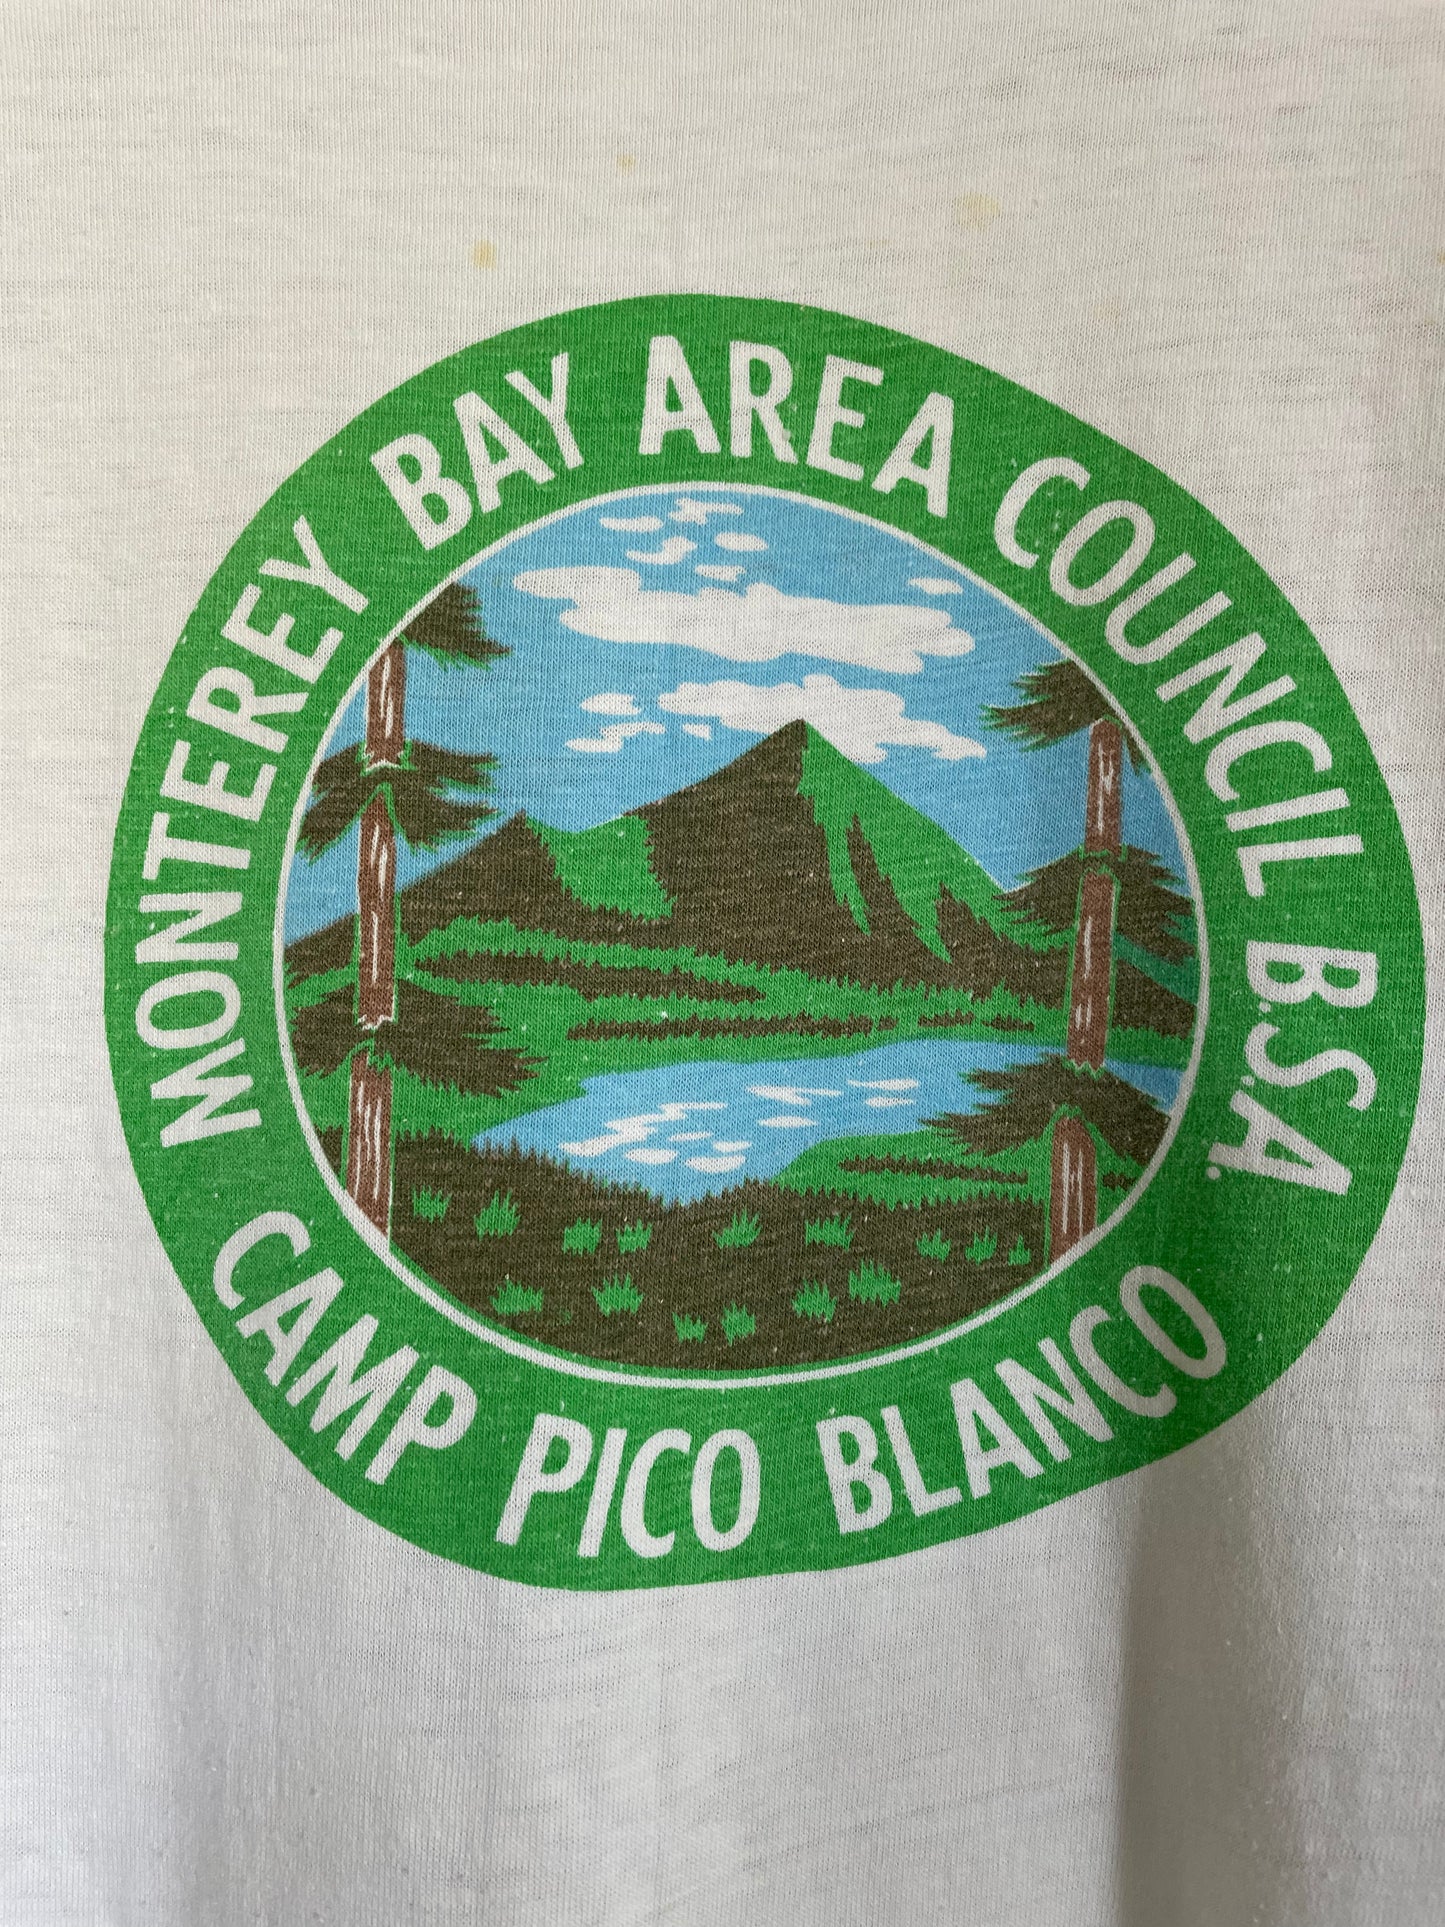 80s Camp Pico Blanco, Monterey Bay Area Council BSA tee